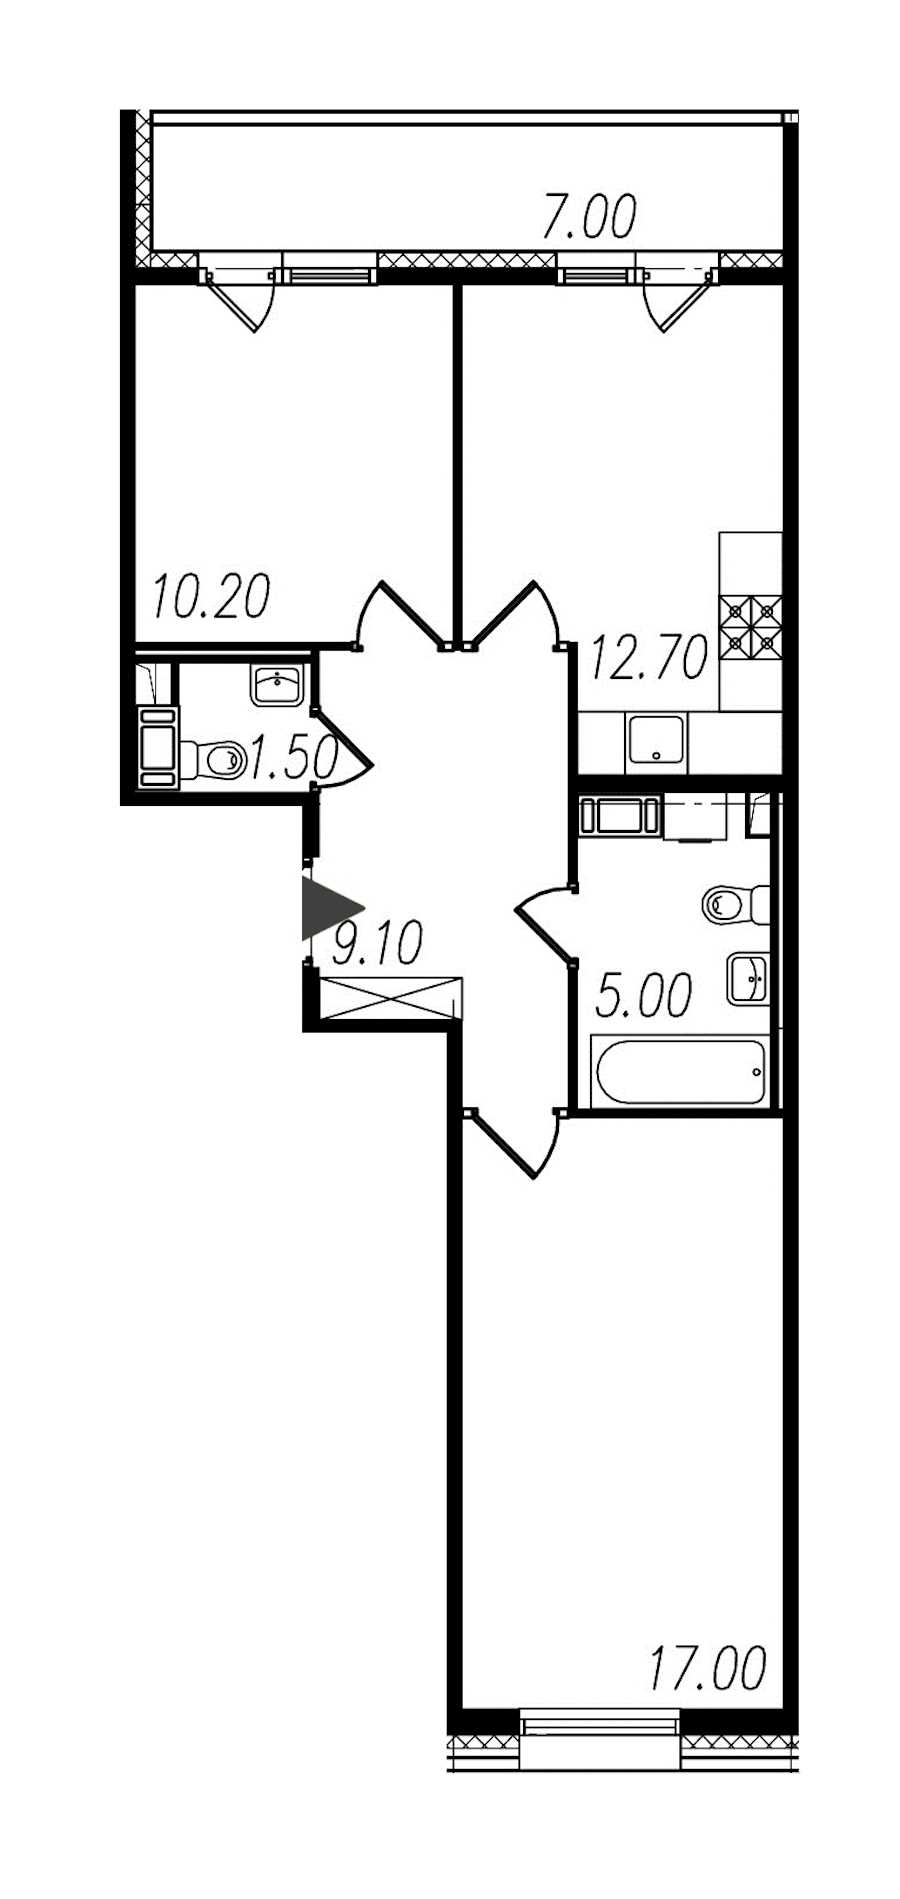 Двухкомнатная квартира в : площадь 55.5 м2 , этаж: 9 – купить в Санкт-Петербурге